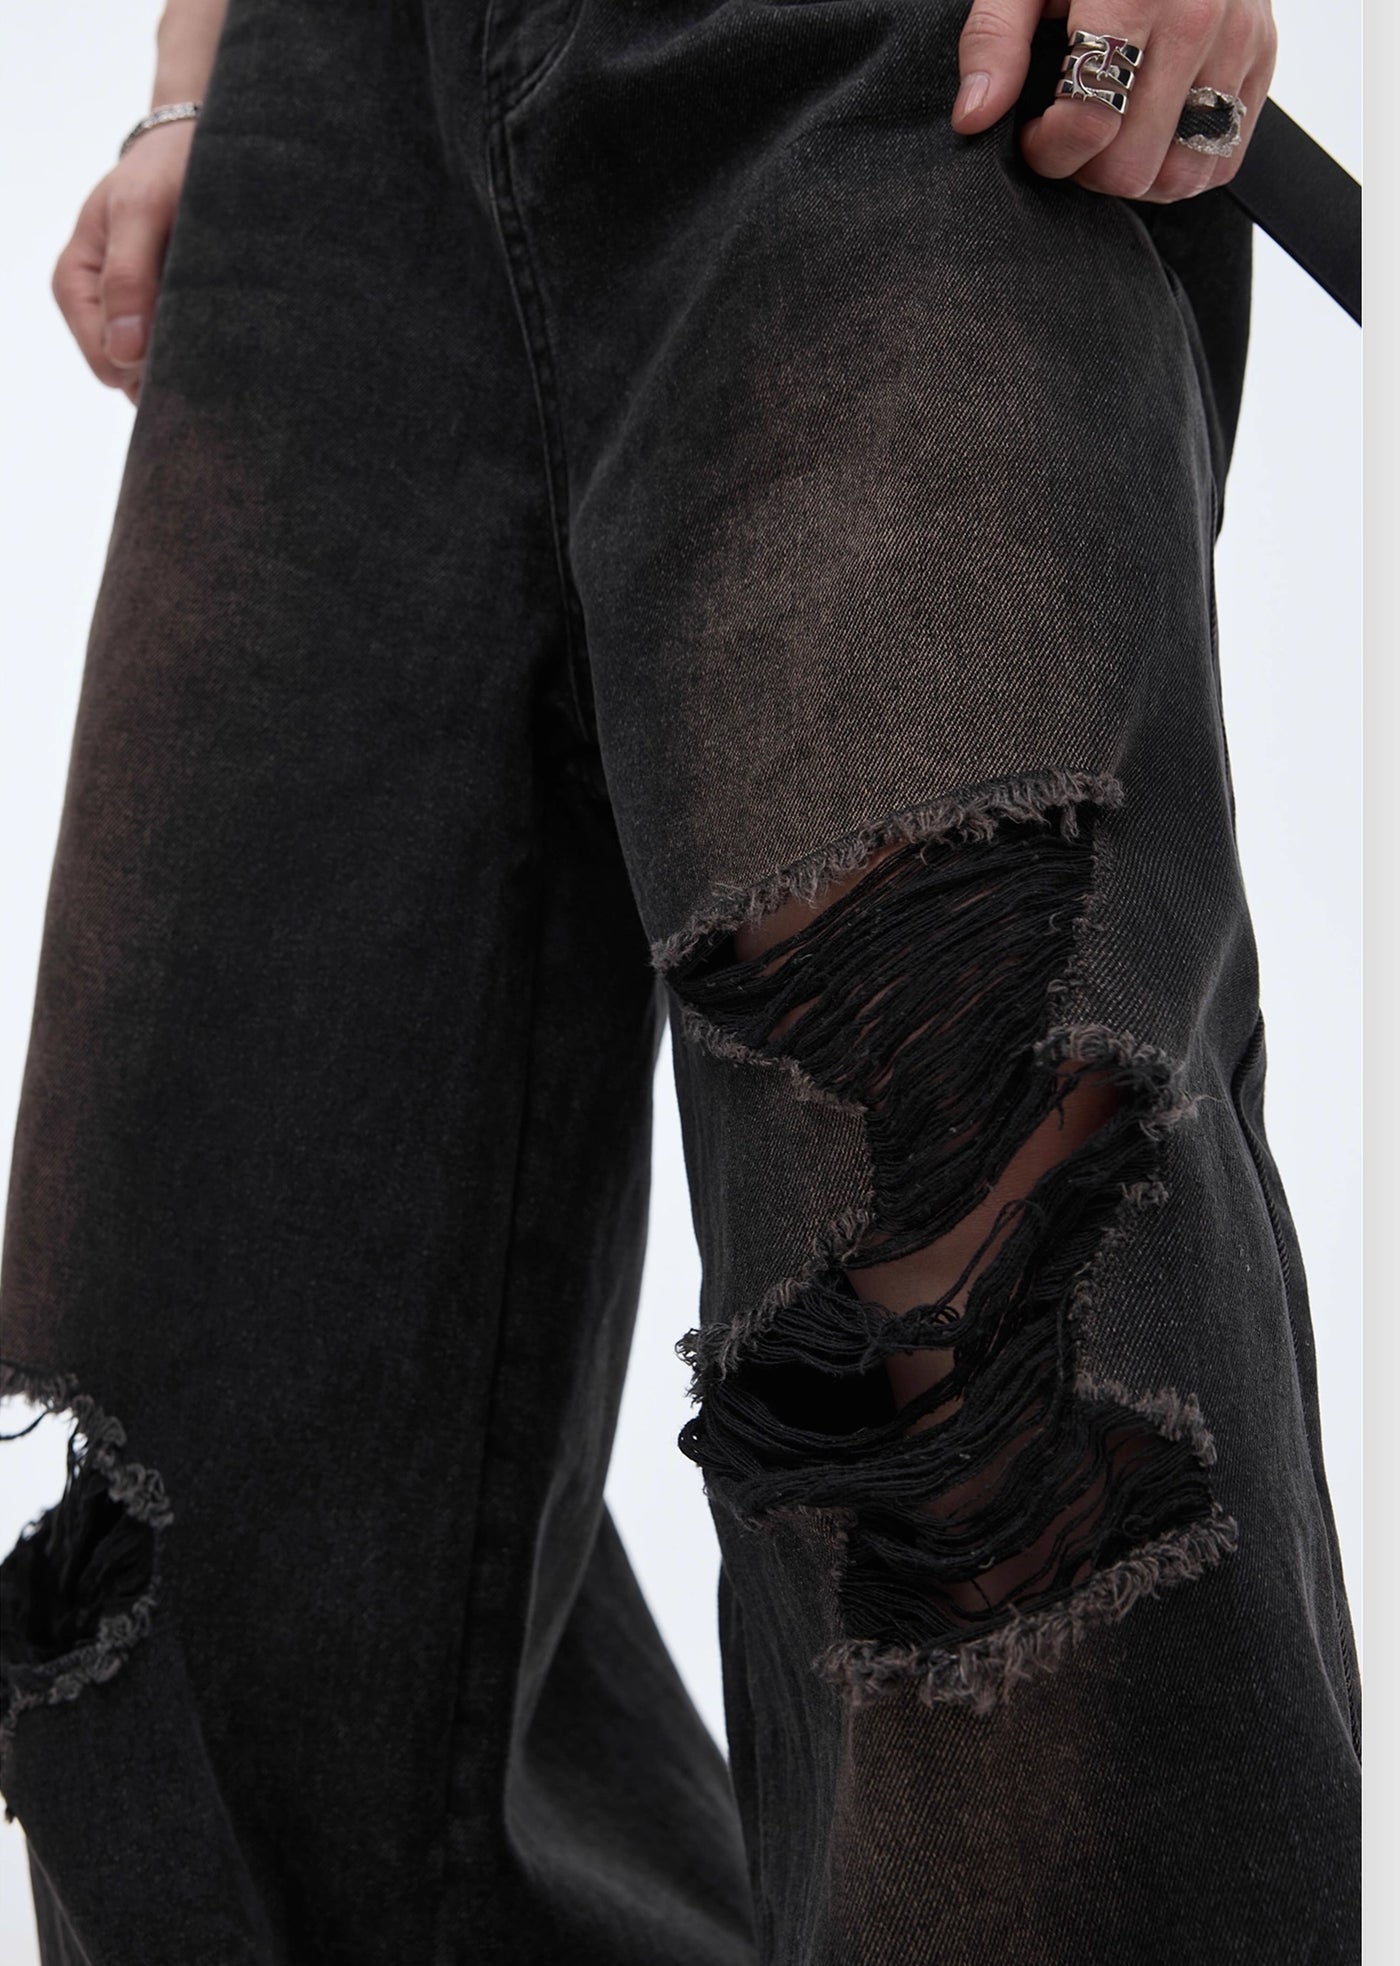 【Culture E】High wide silhouette design full distressed denim pants  CE0119